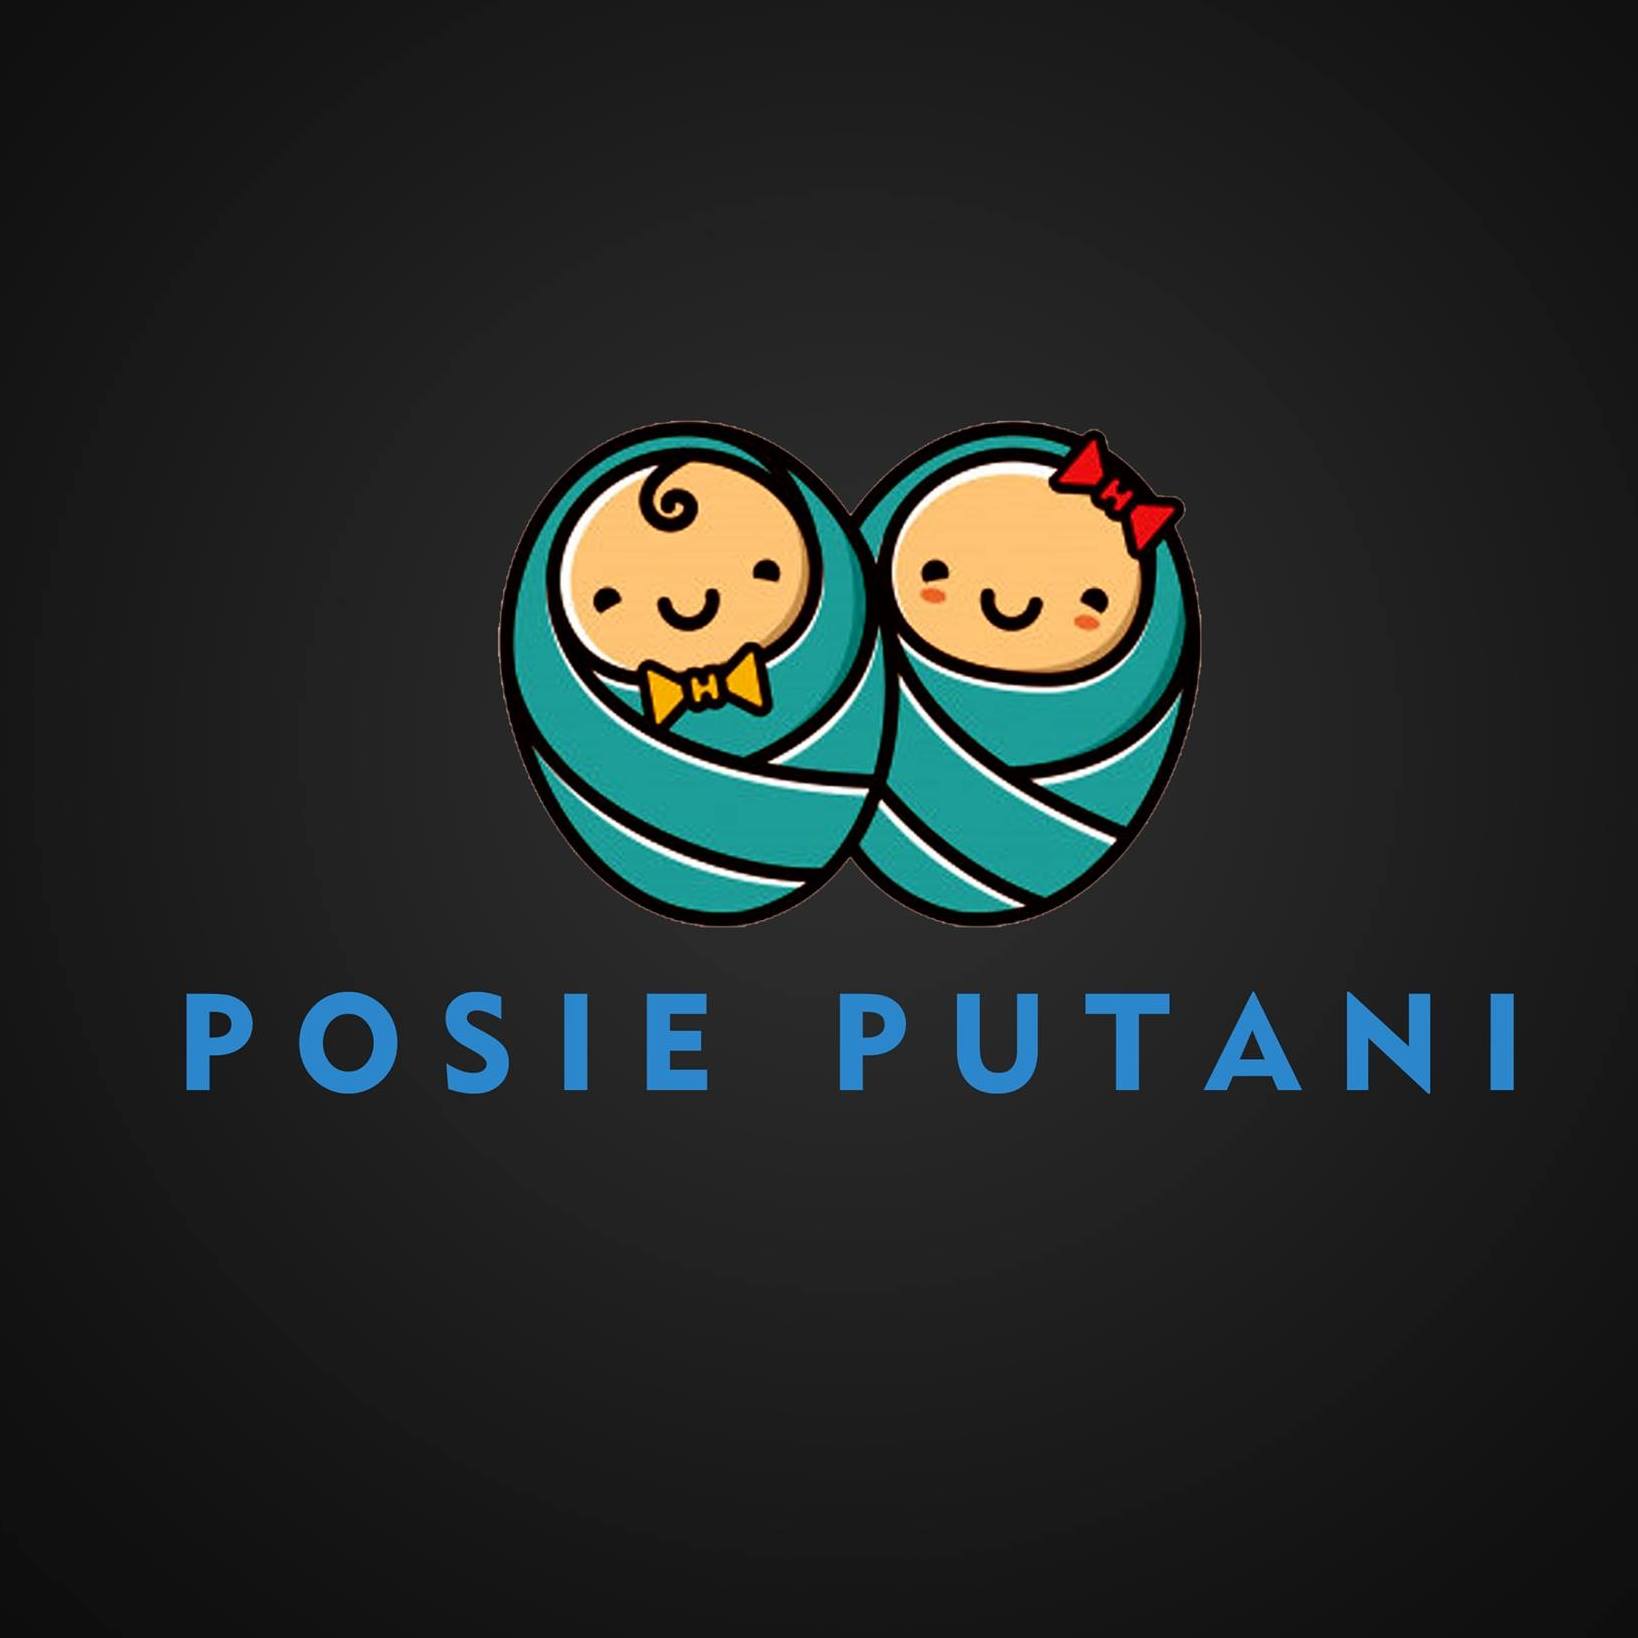 Posie Putani|Banquet Halls|Event Services